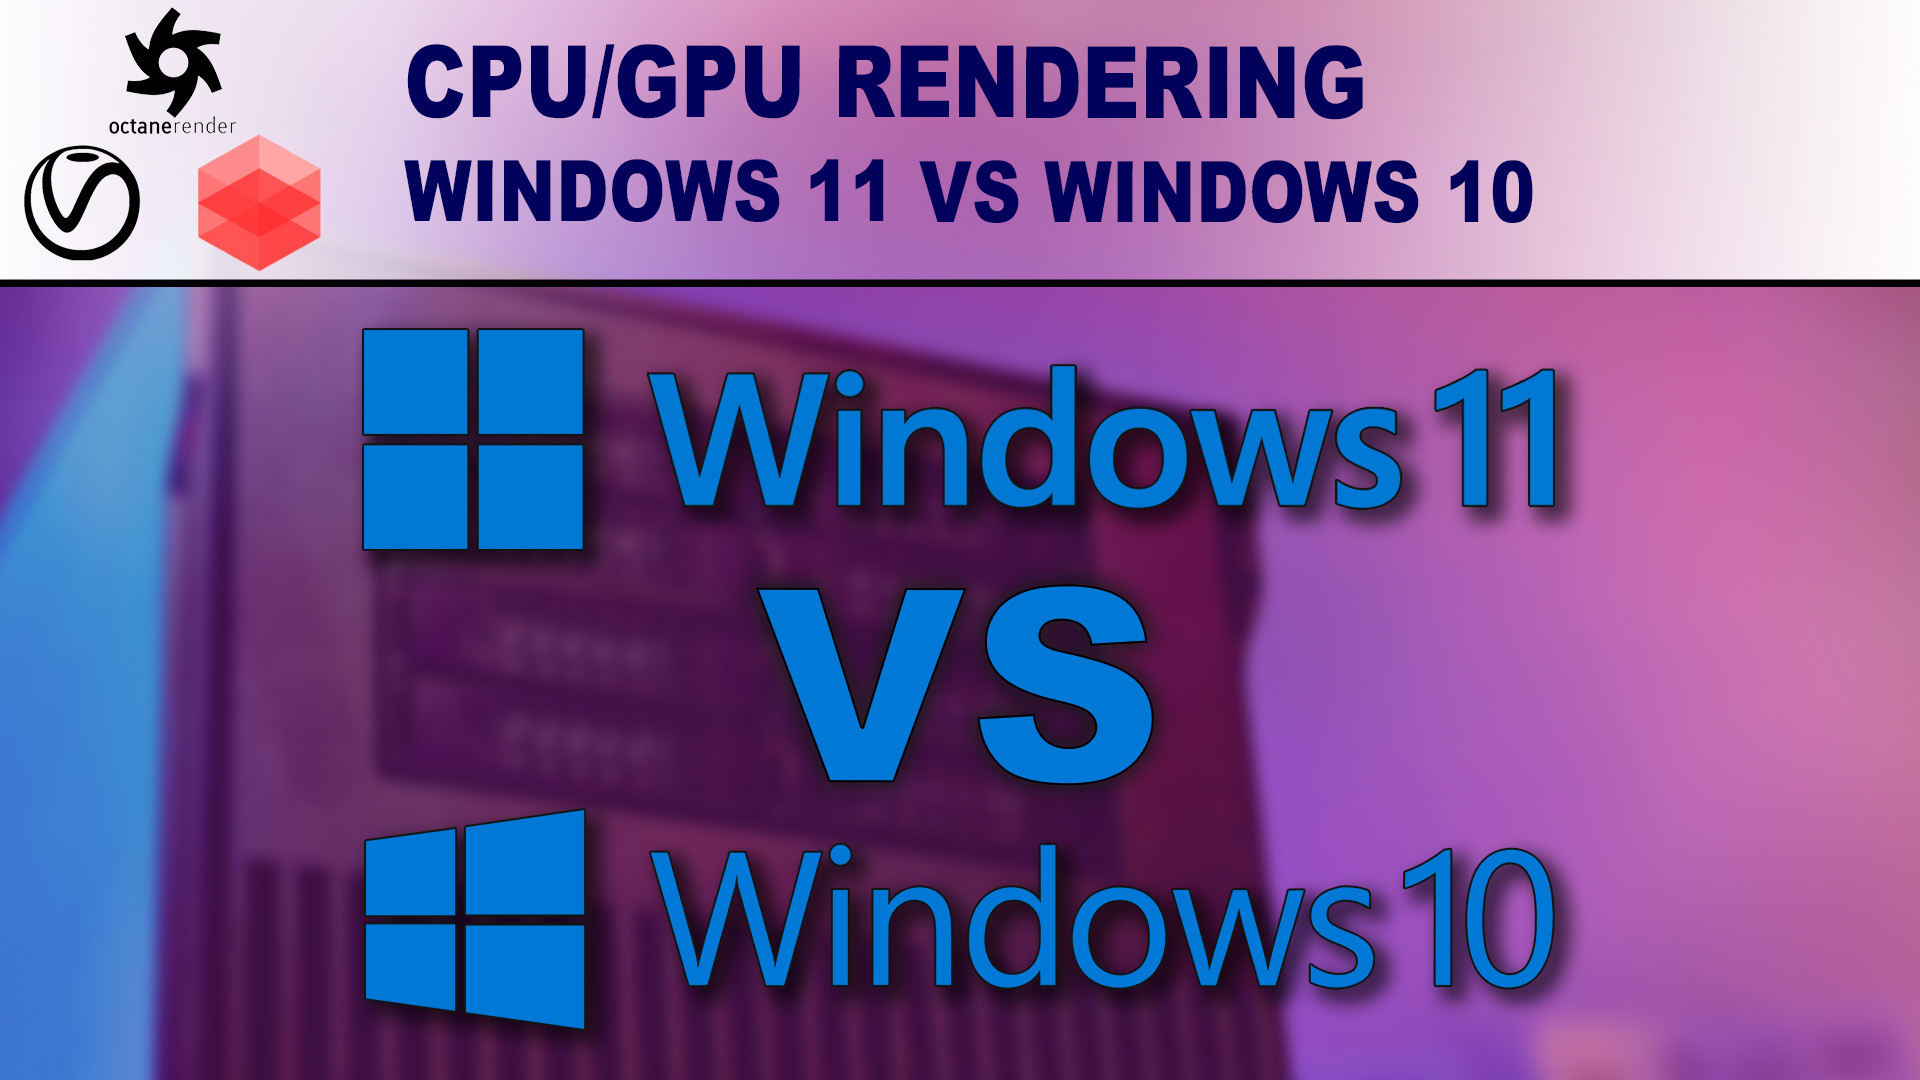 Windows 10 vs Windows 11 for Rendering